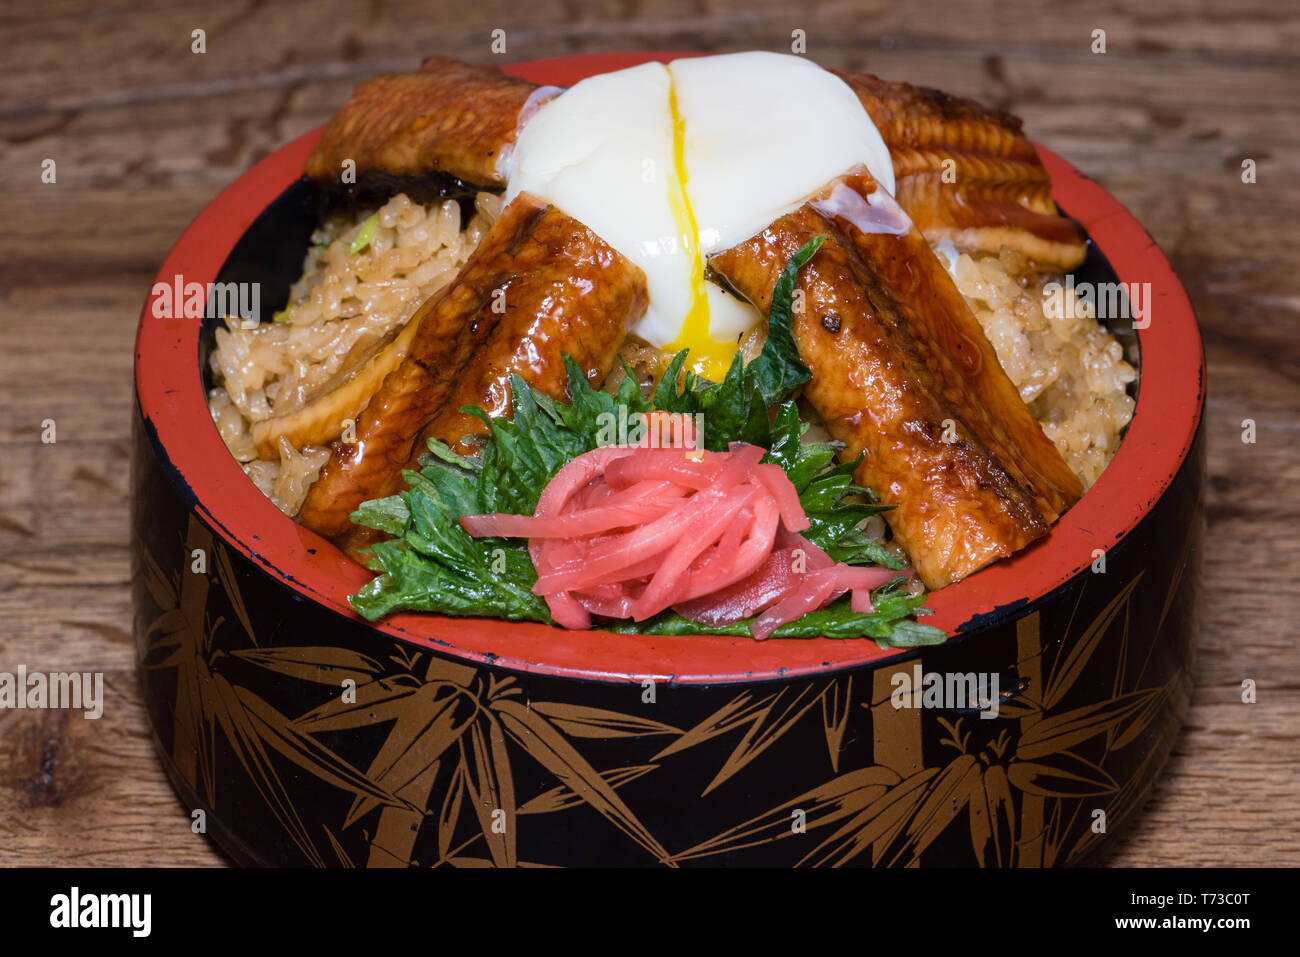 Japanische fusion Teller mit pikanter Reis mit tamari Sauce, gebratener Aal, Ei und rote Rübe, in einer verzierten Schüssel, dunkles Holz Tisch Hintergrund Stockfoto